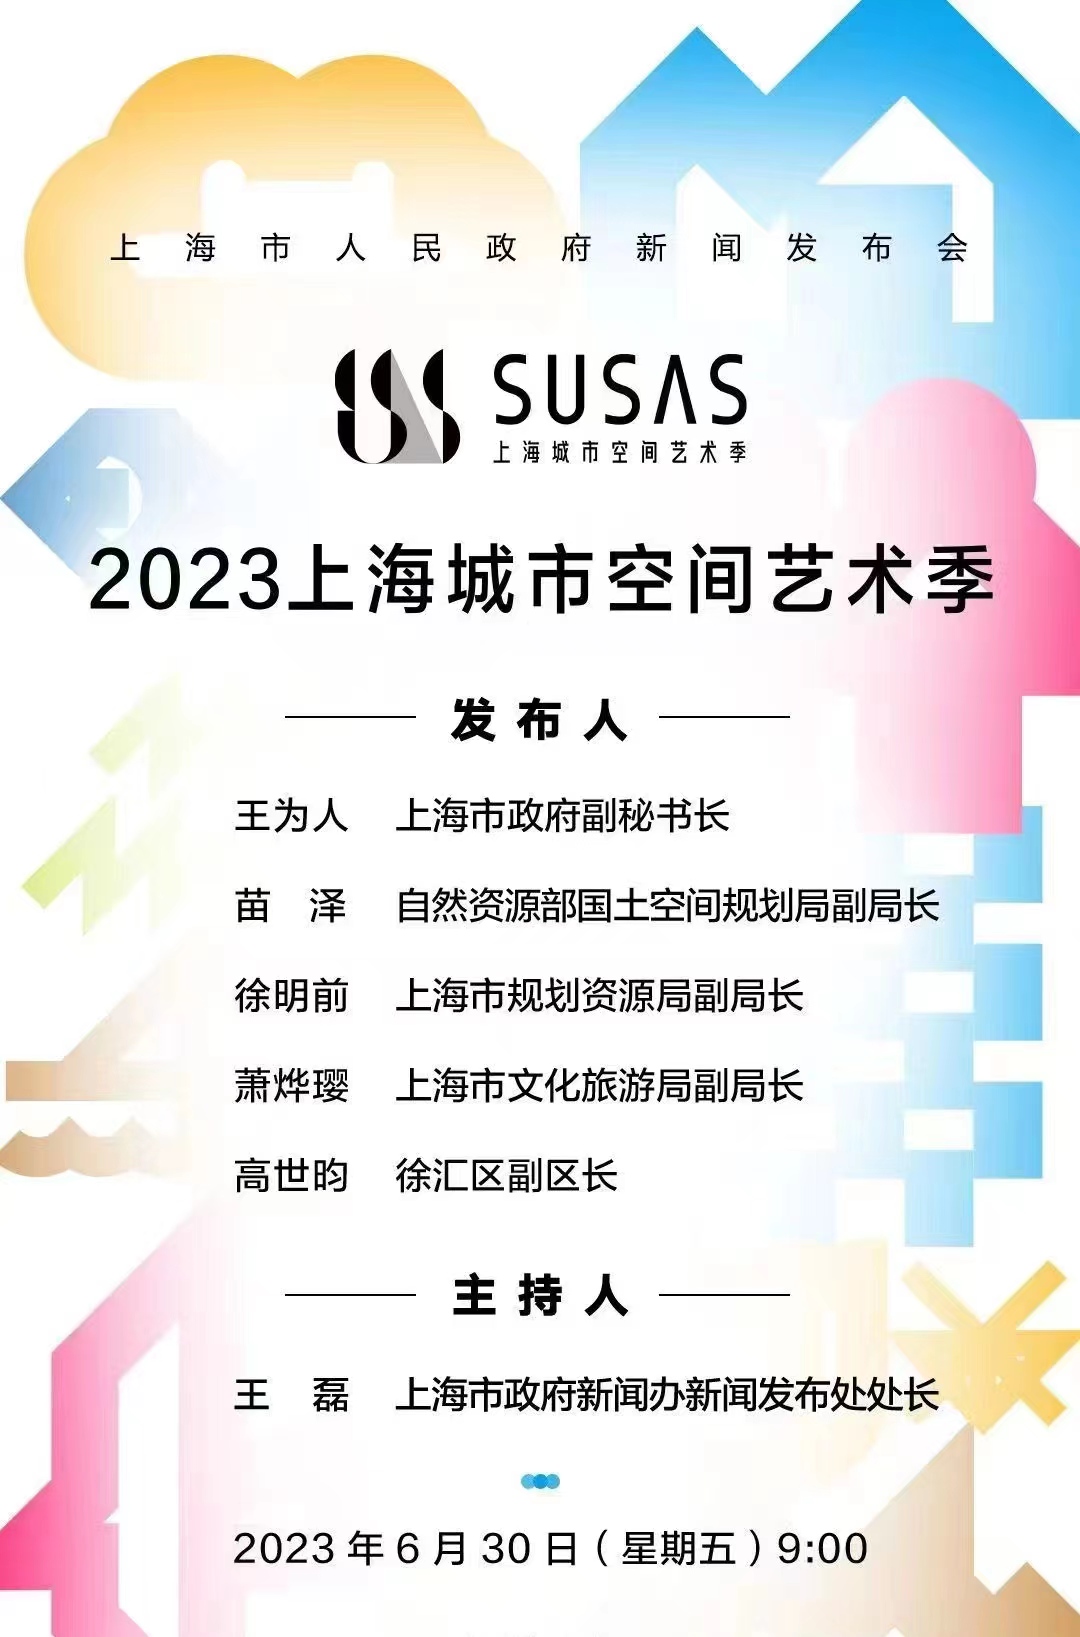 上海市人民政府新闻发布会——2023上海城市空间艺术季插图